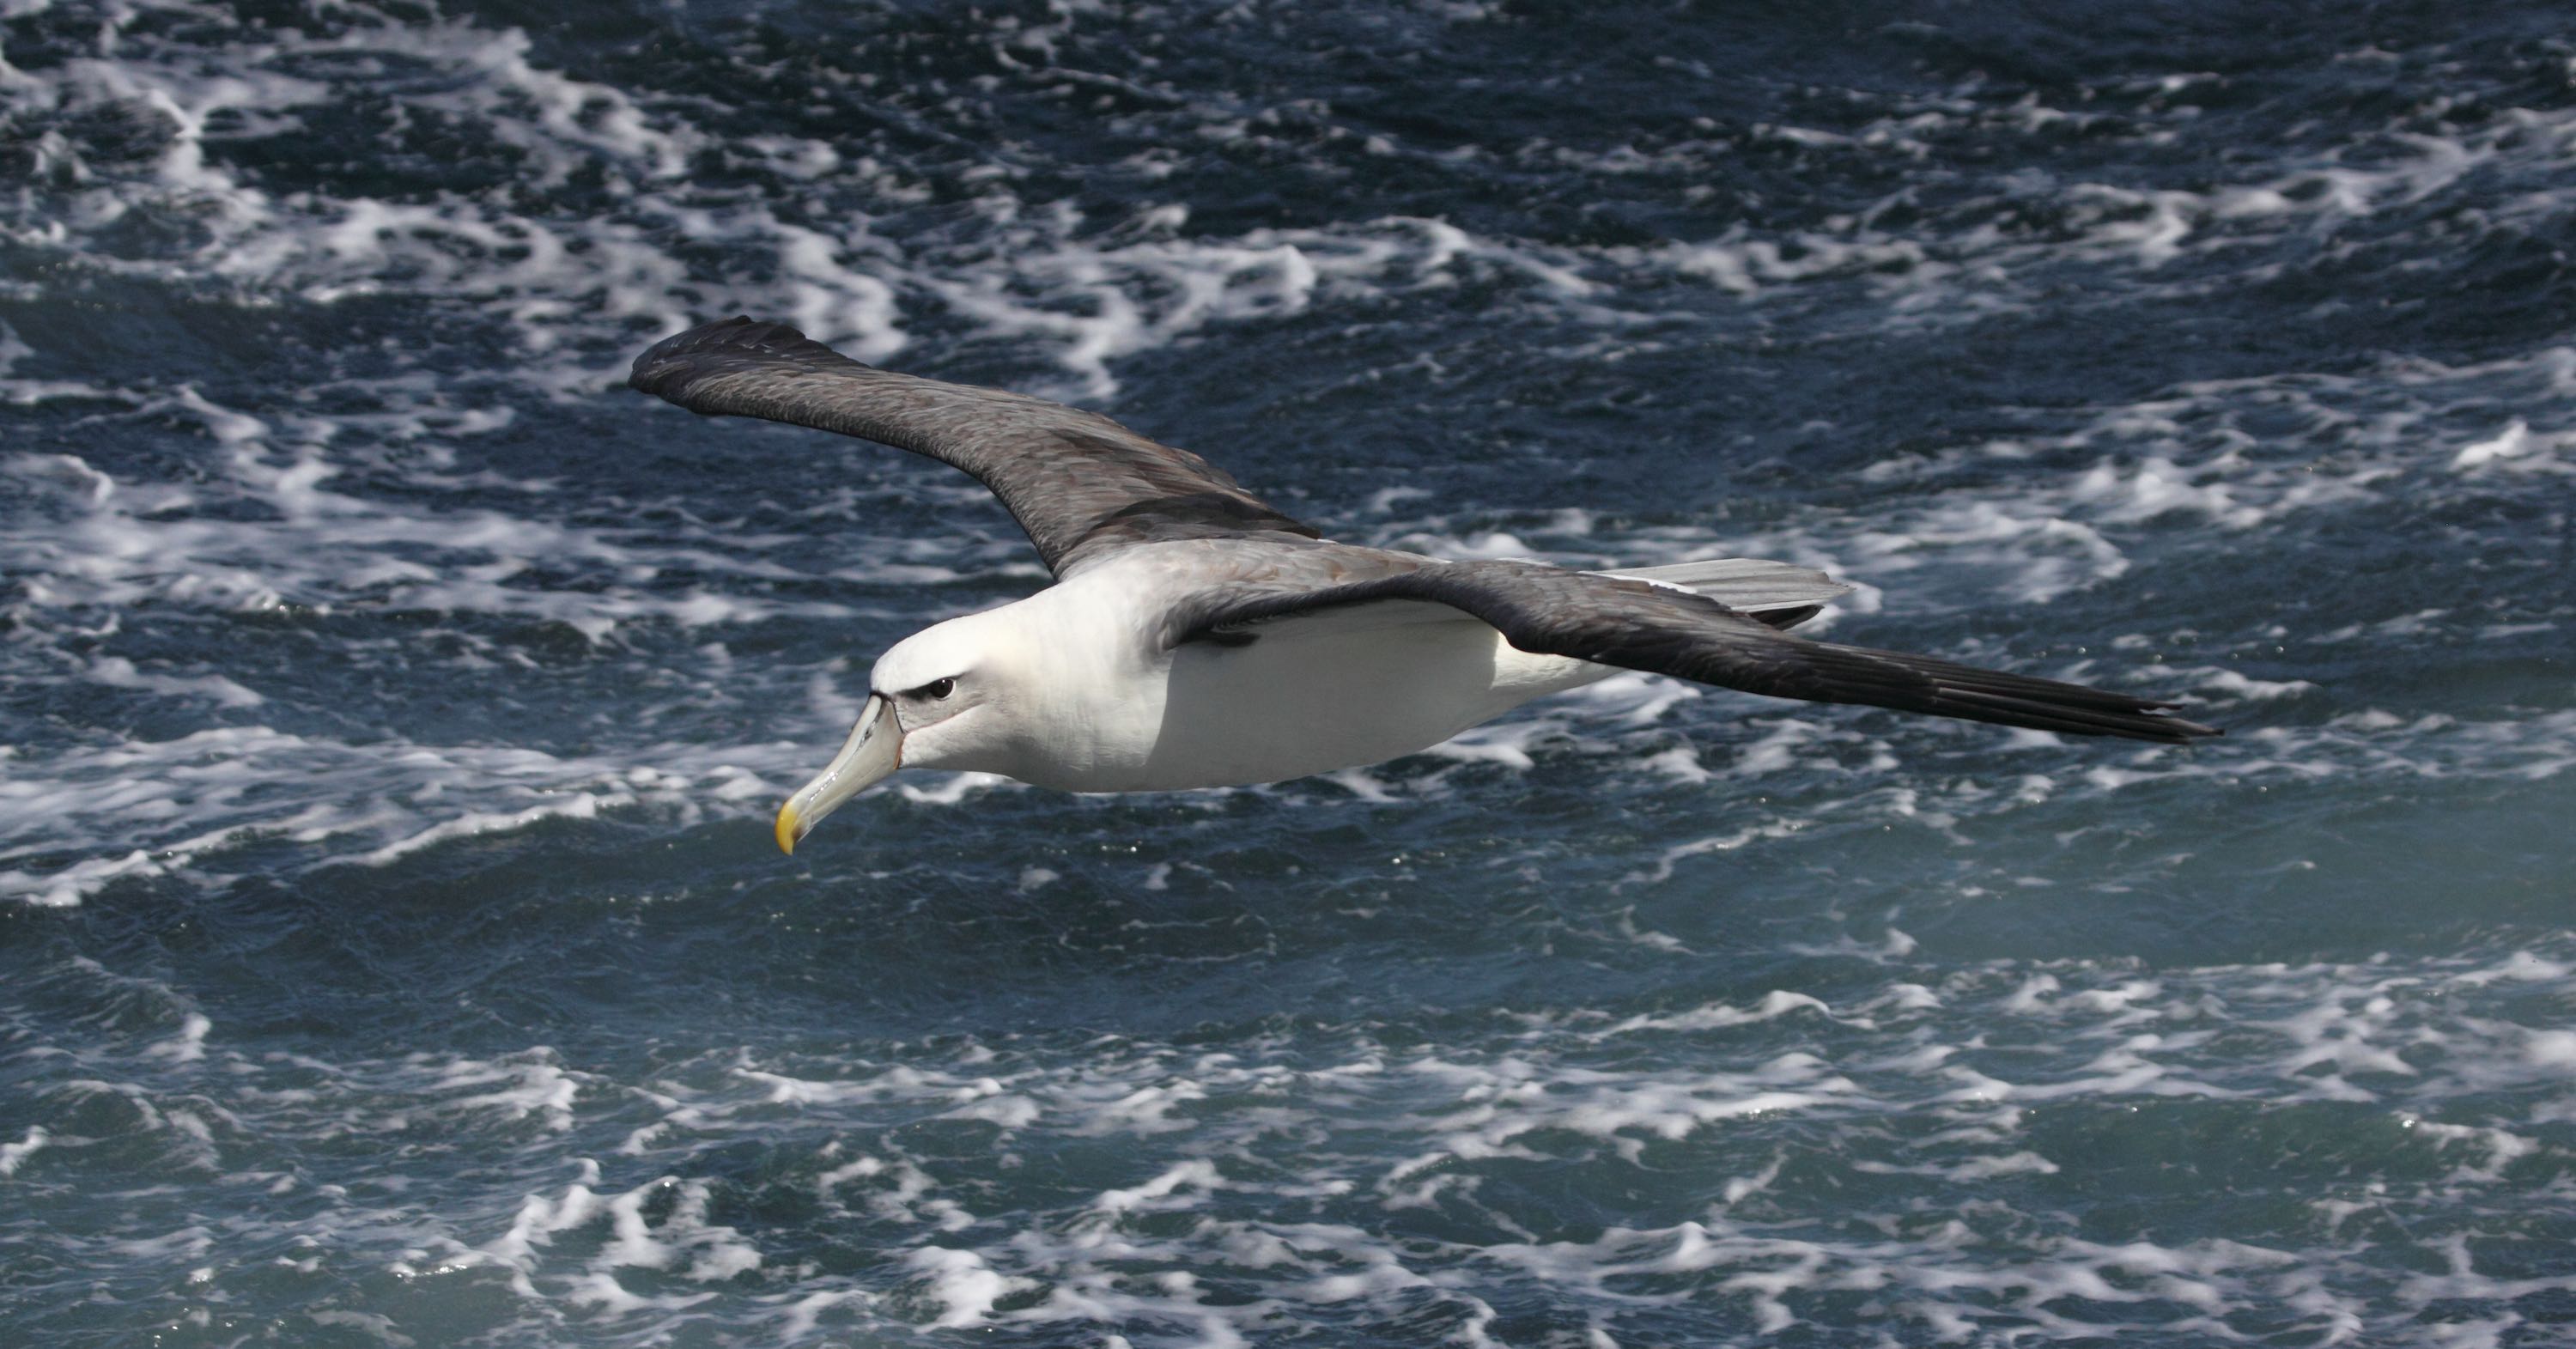 An albatross flies above foam flecked waves.